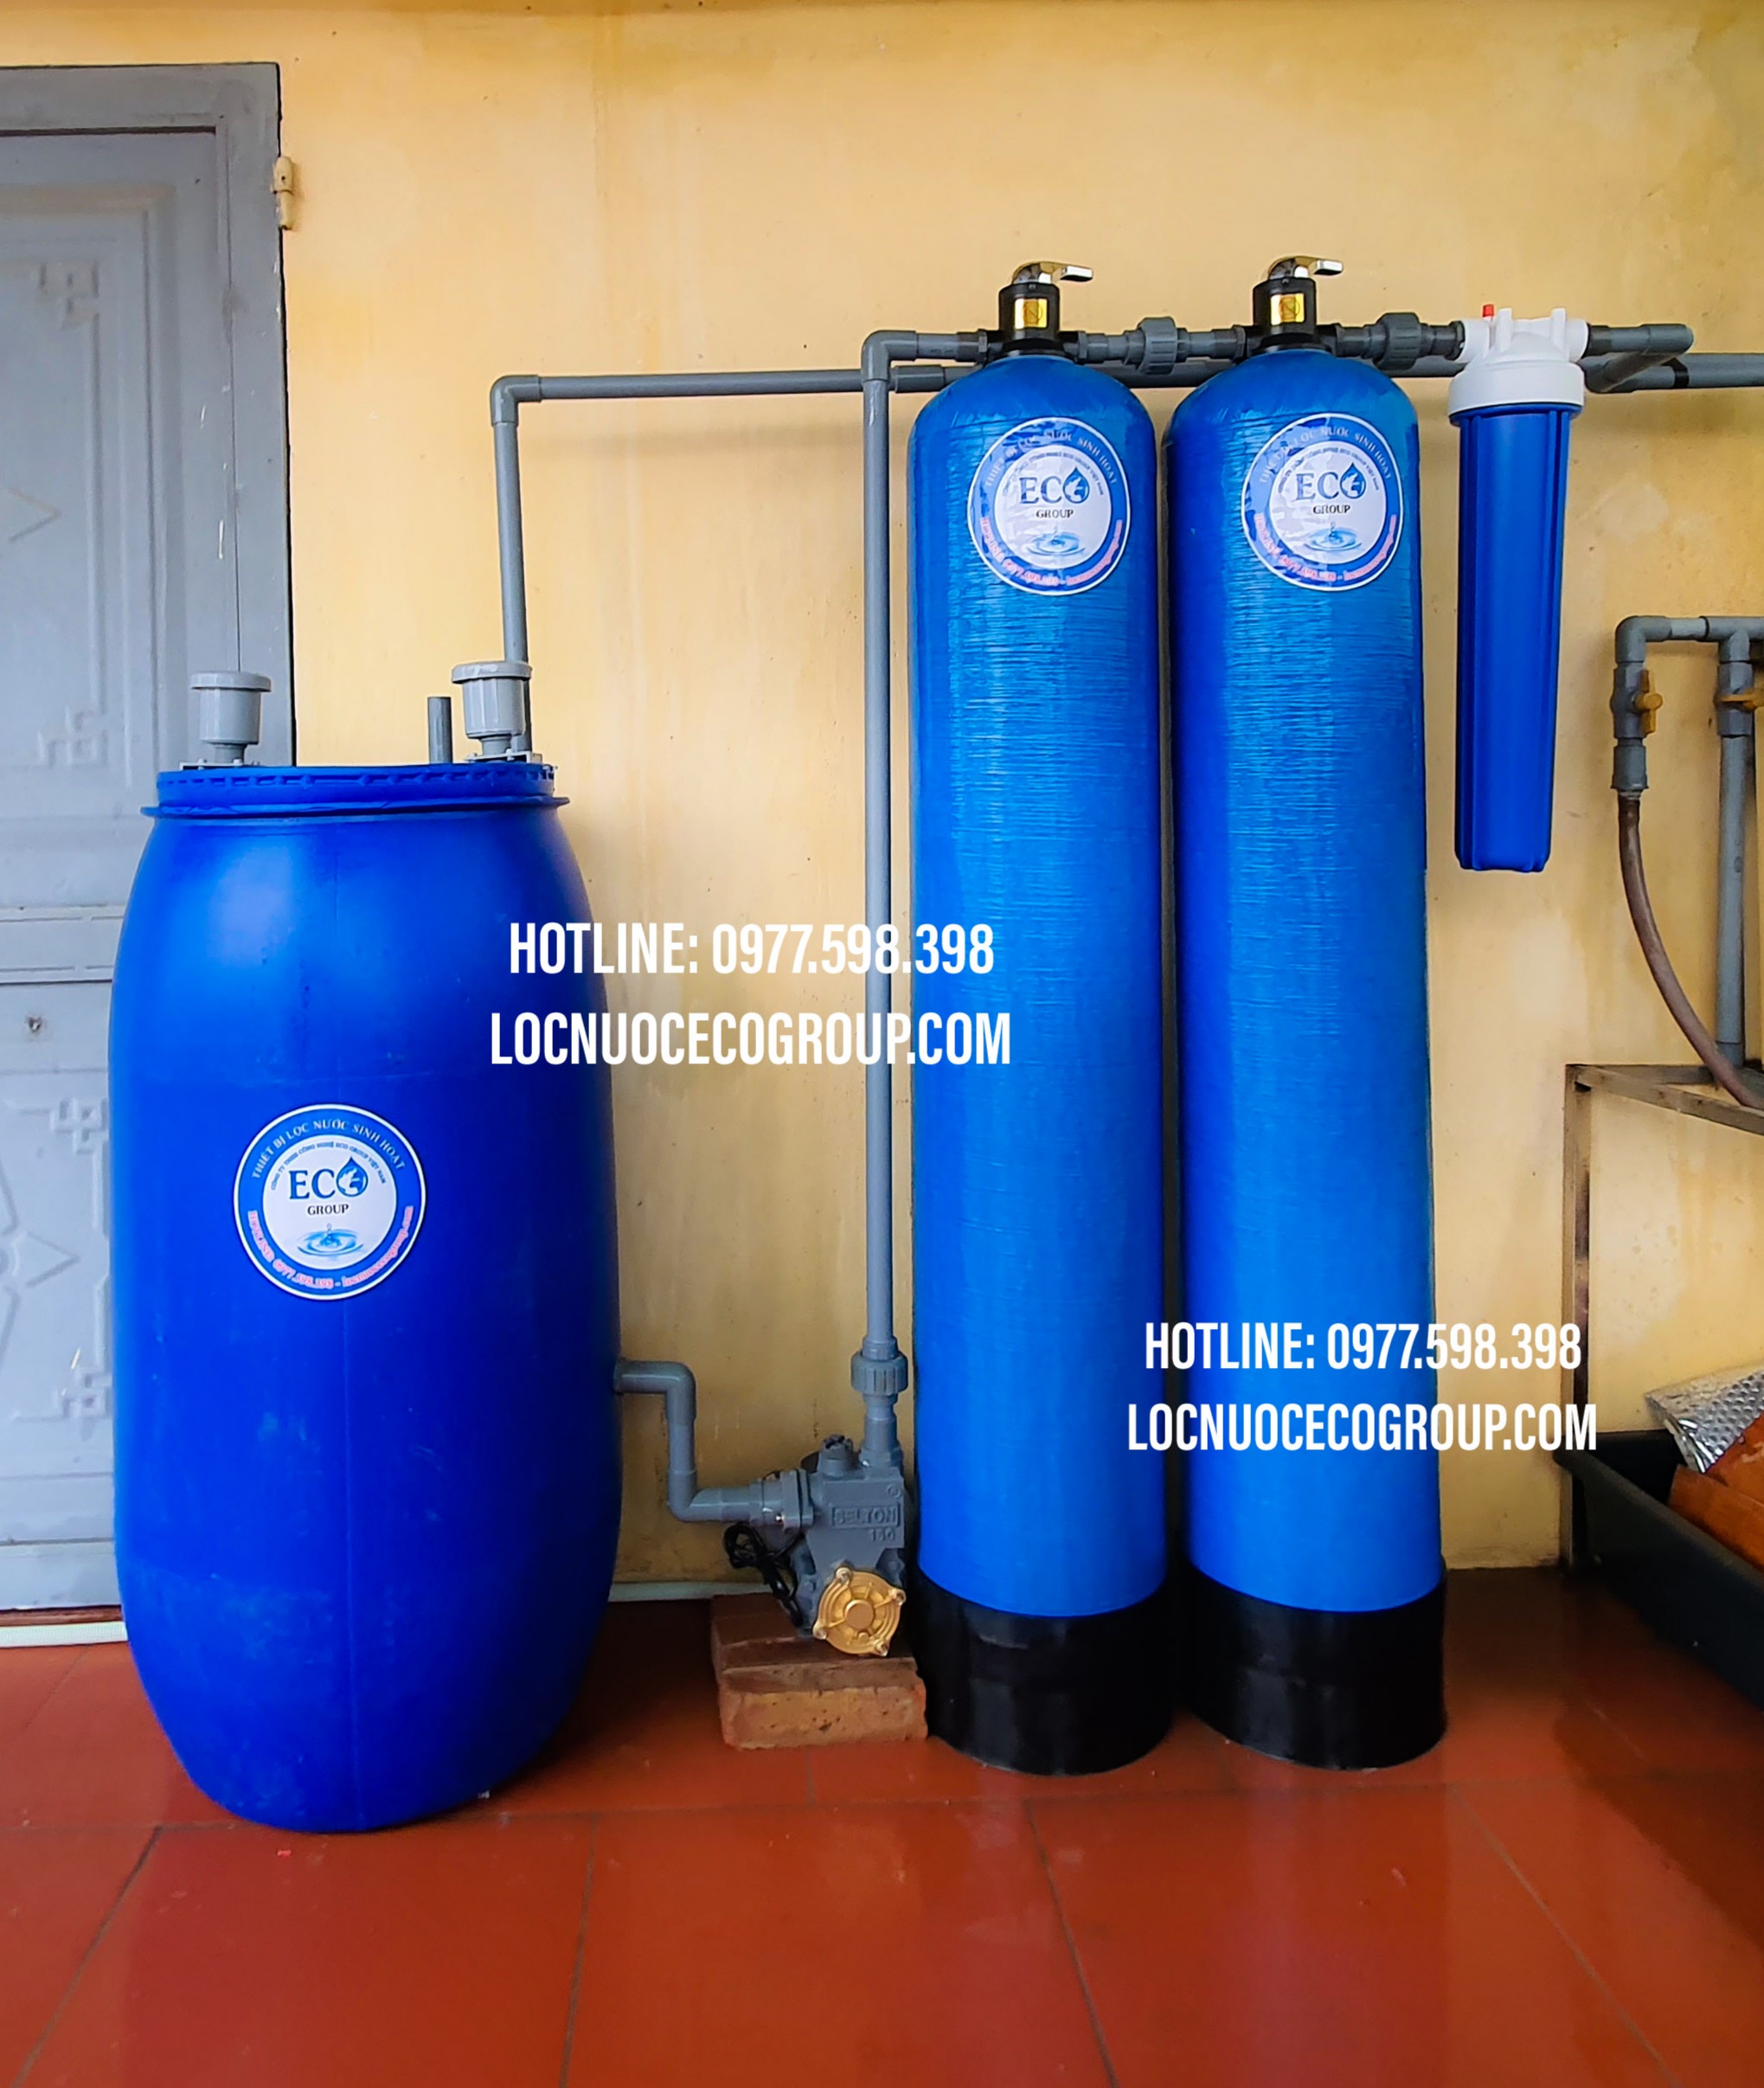 Lắp đặt hệ thống lọc nước giếng khoan ECO - GK02 tại Thanh Thanh Oai, Hà Nội